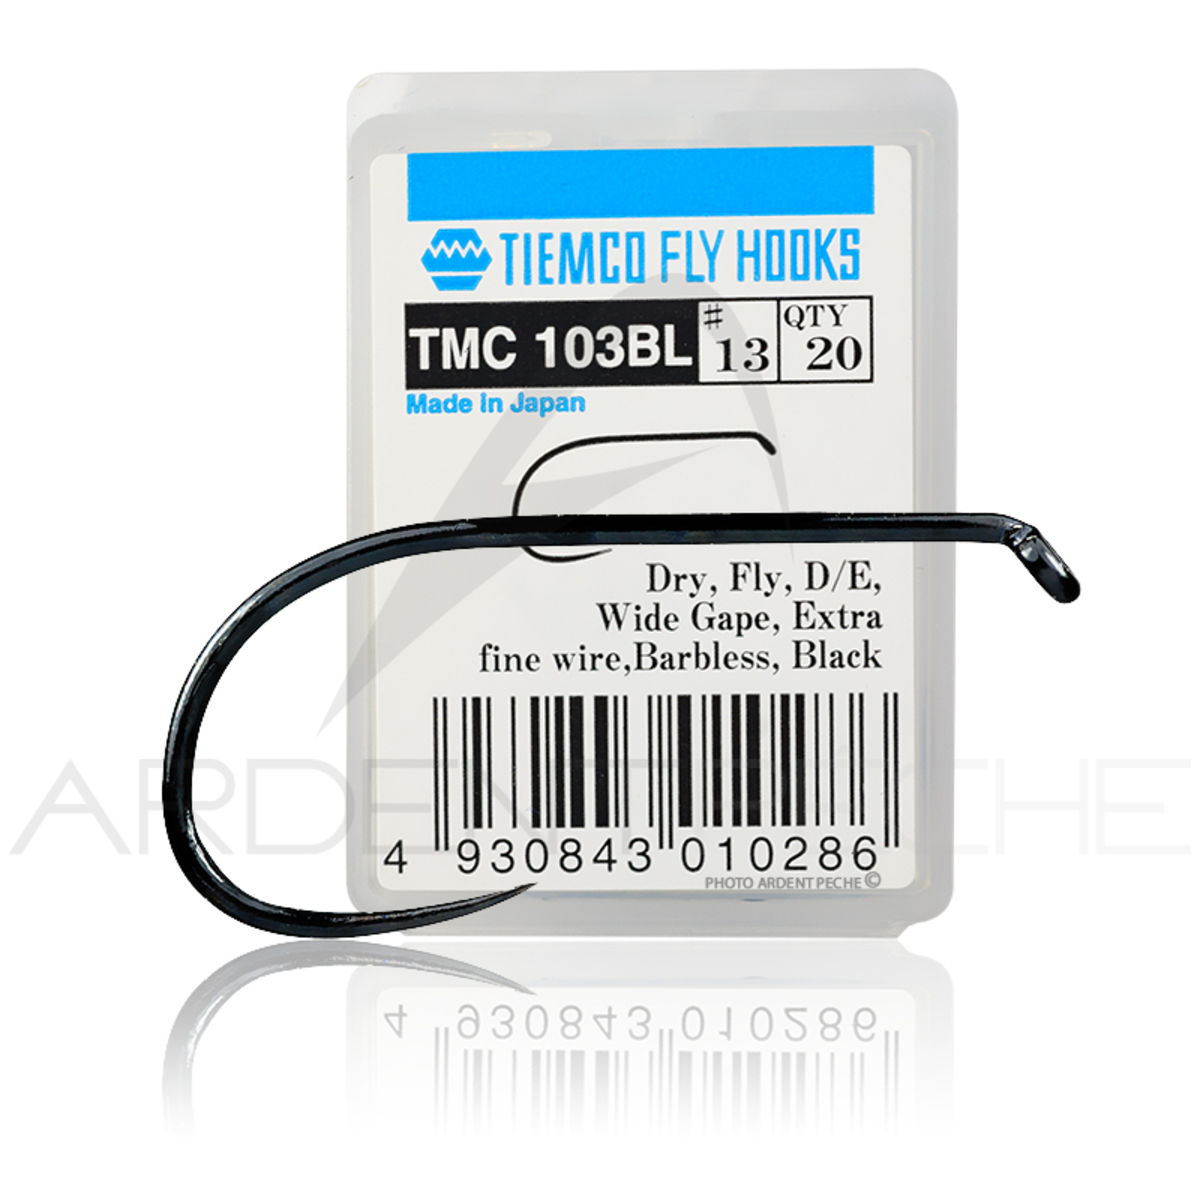 Tiemco TMC 103 BL Barbless Fine Wire Dry Fly Hook - AvidMax